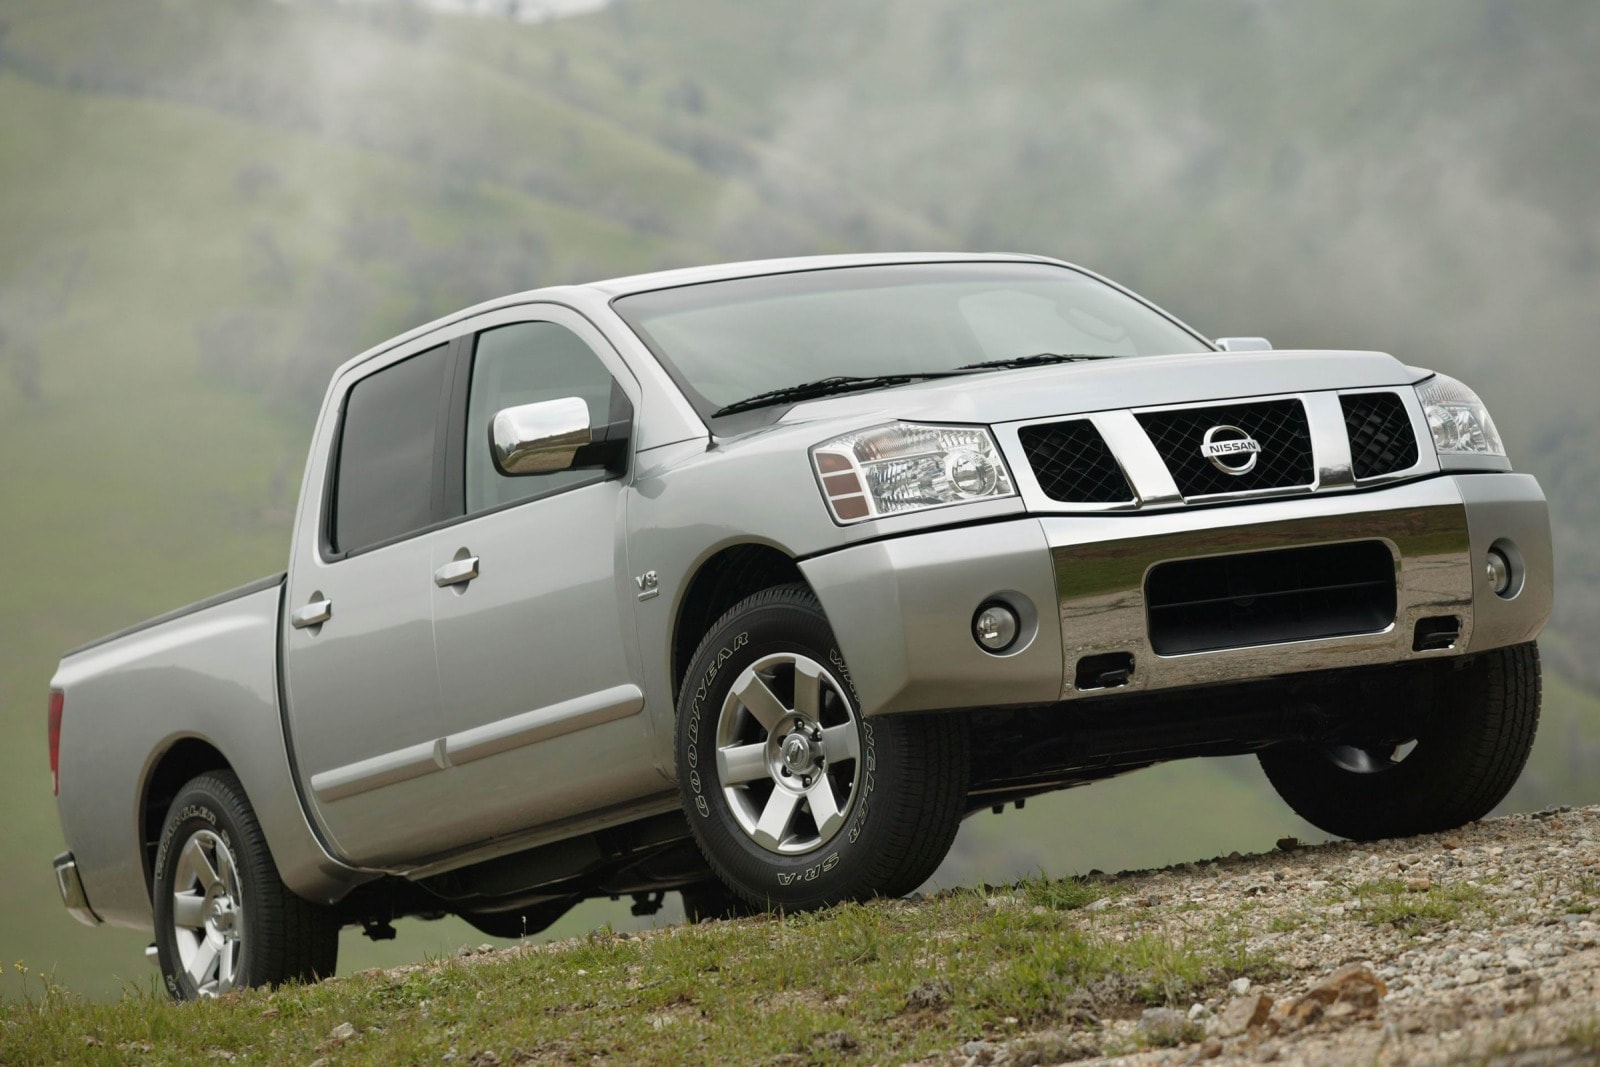 2007 Nissan Titan Review & Ratings | Edmunds